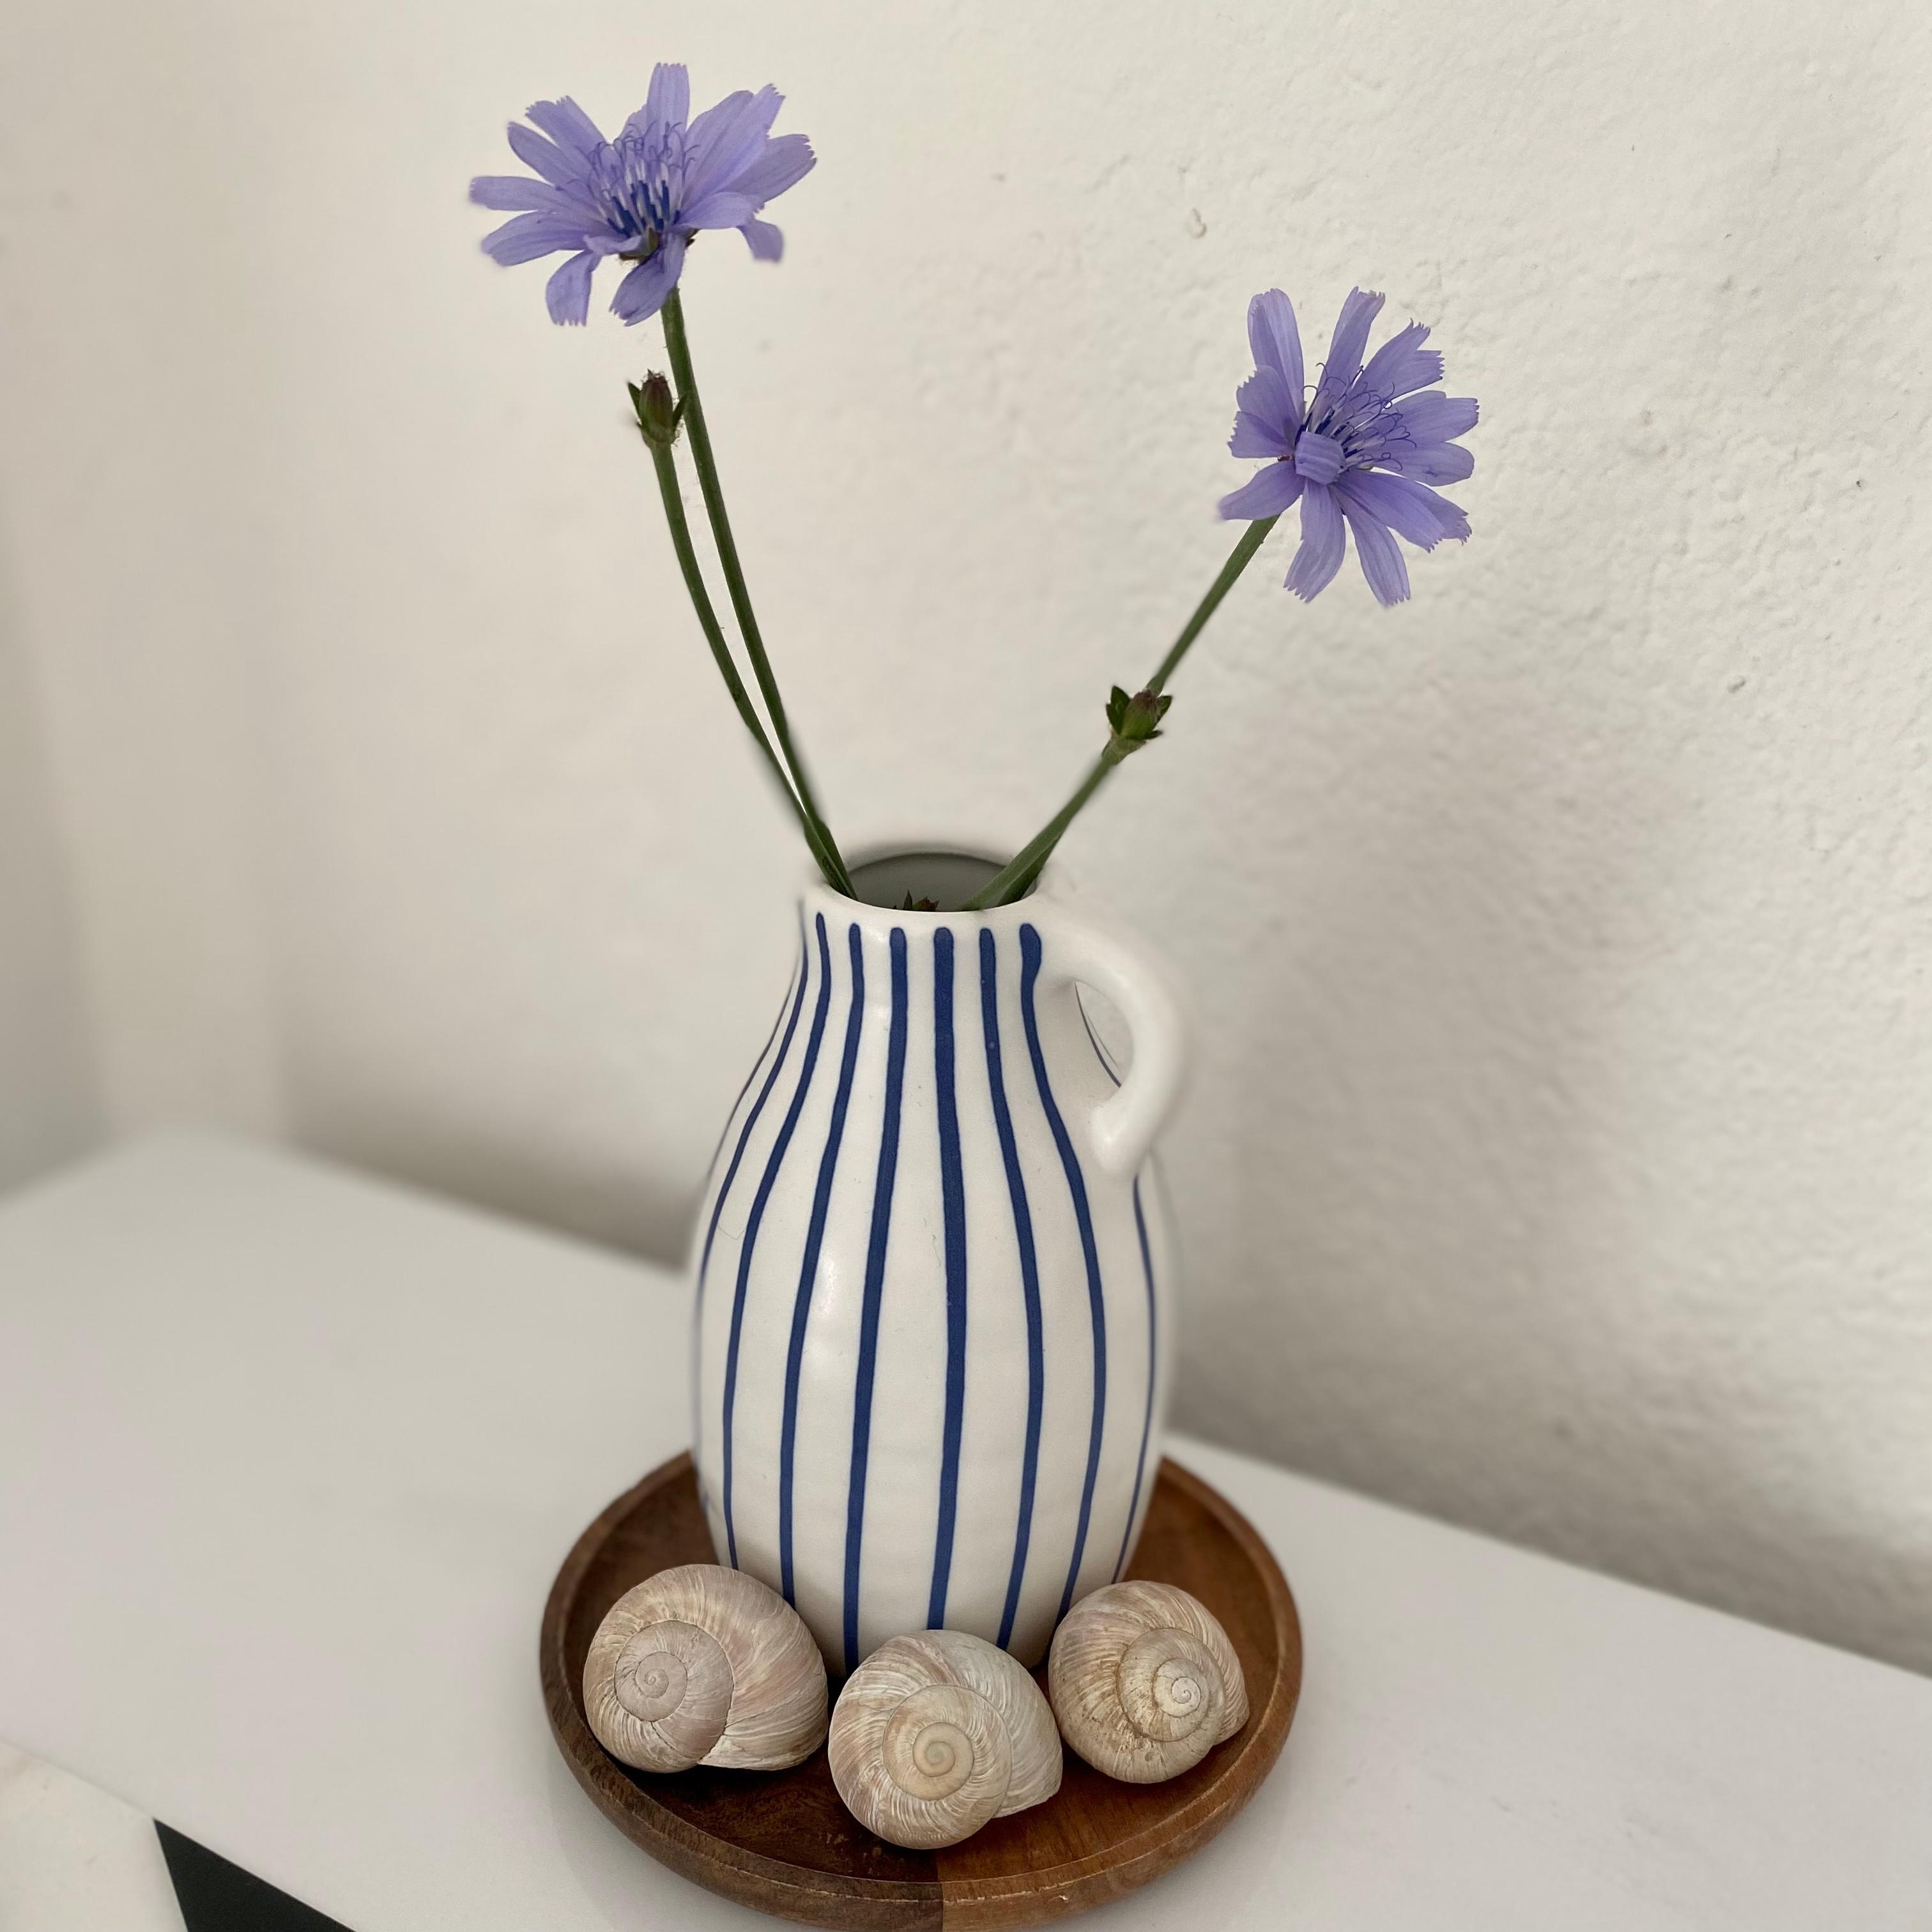 Vase bei Ikea mitgenommen, Kornblumen heute gepflückt und dann rasch arrangiert. Die Schneckenhäuser hab ich gefunden